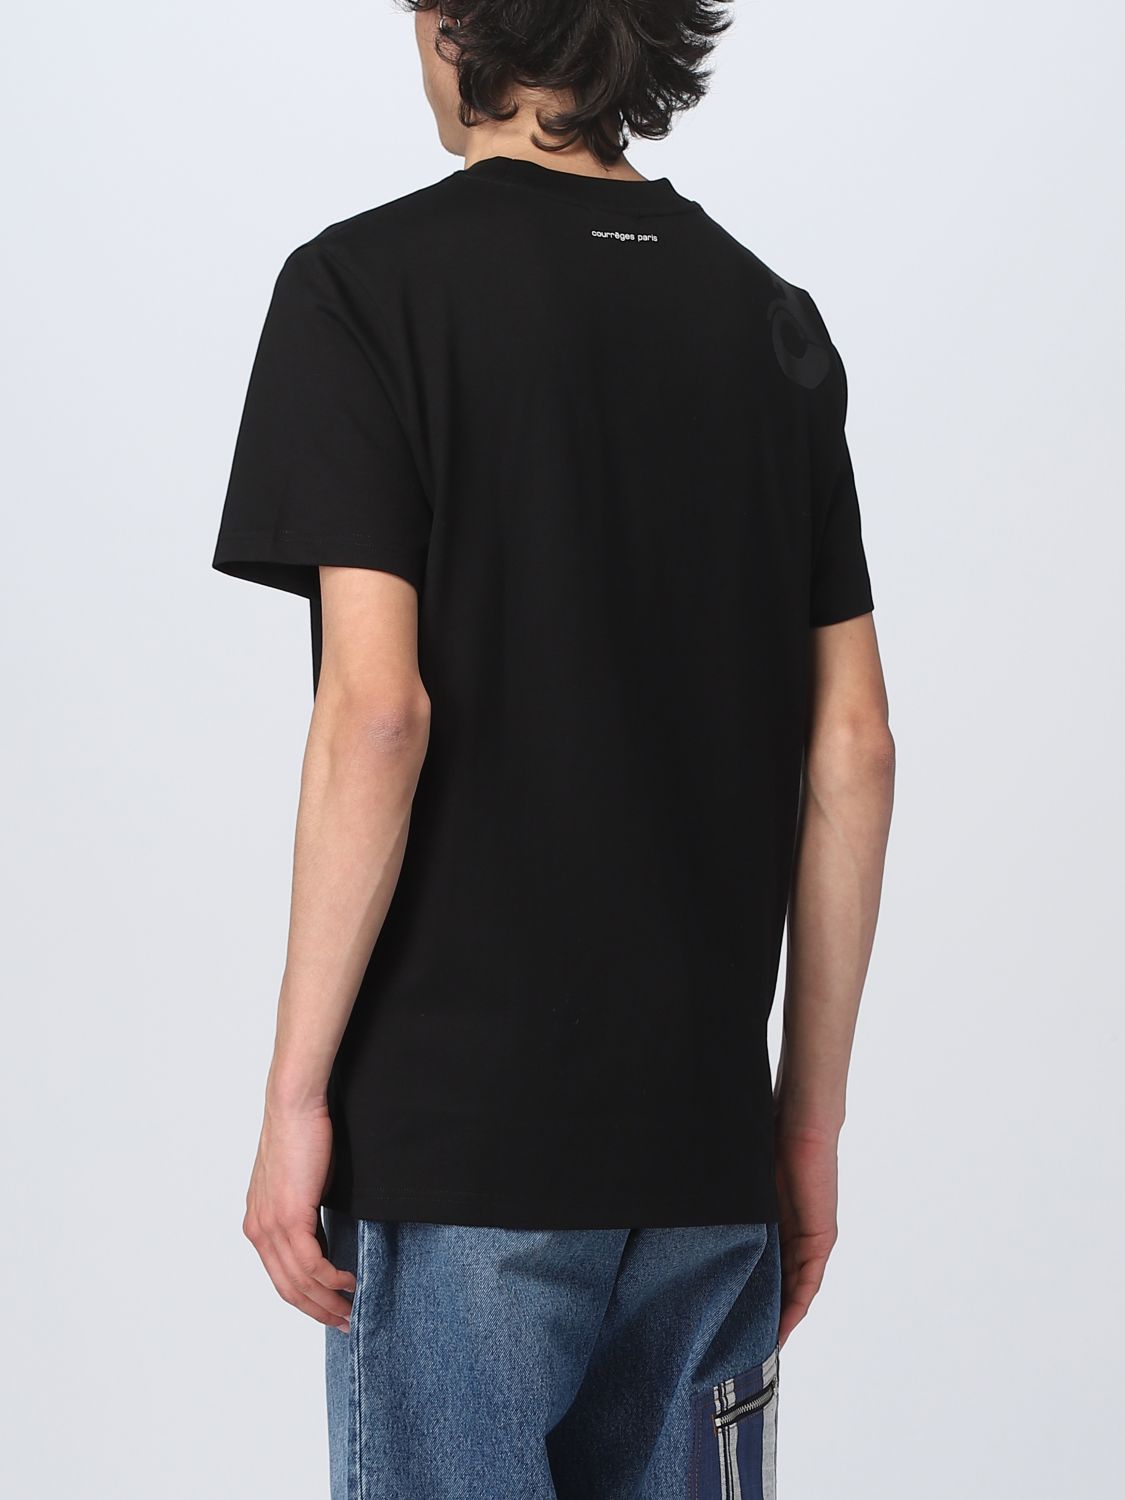 T-shirt Courrèges: T-shirt CourrÈges in cotone nero 3